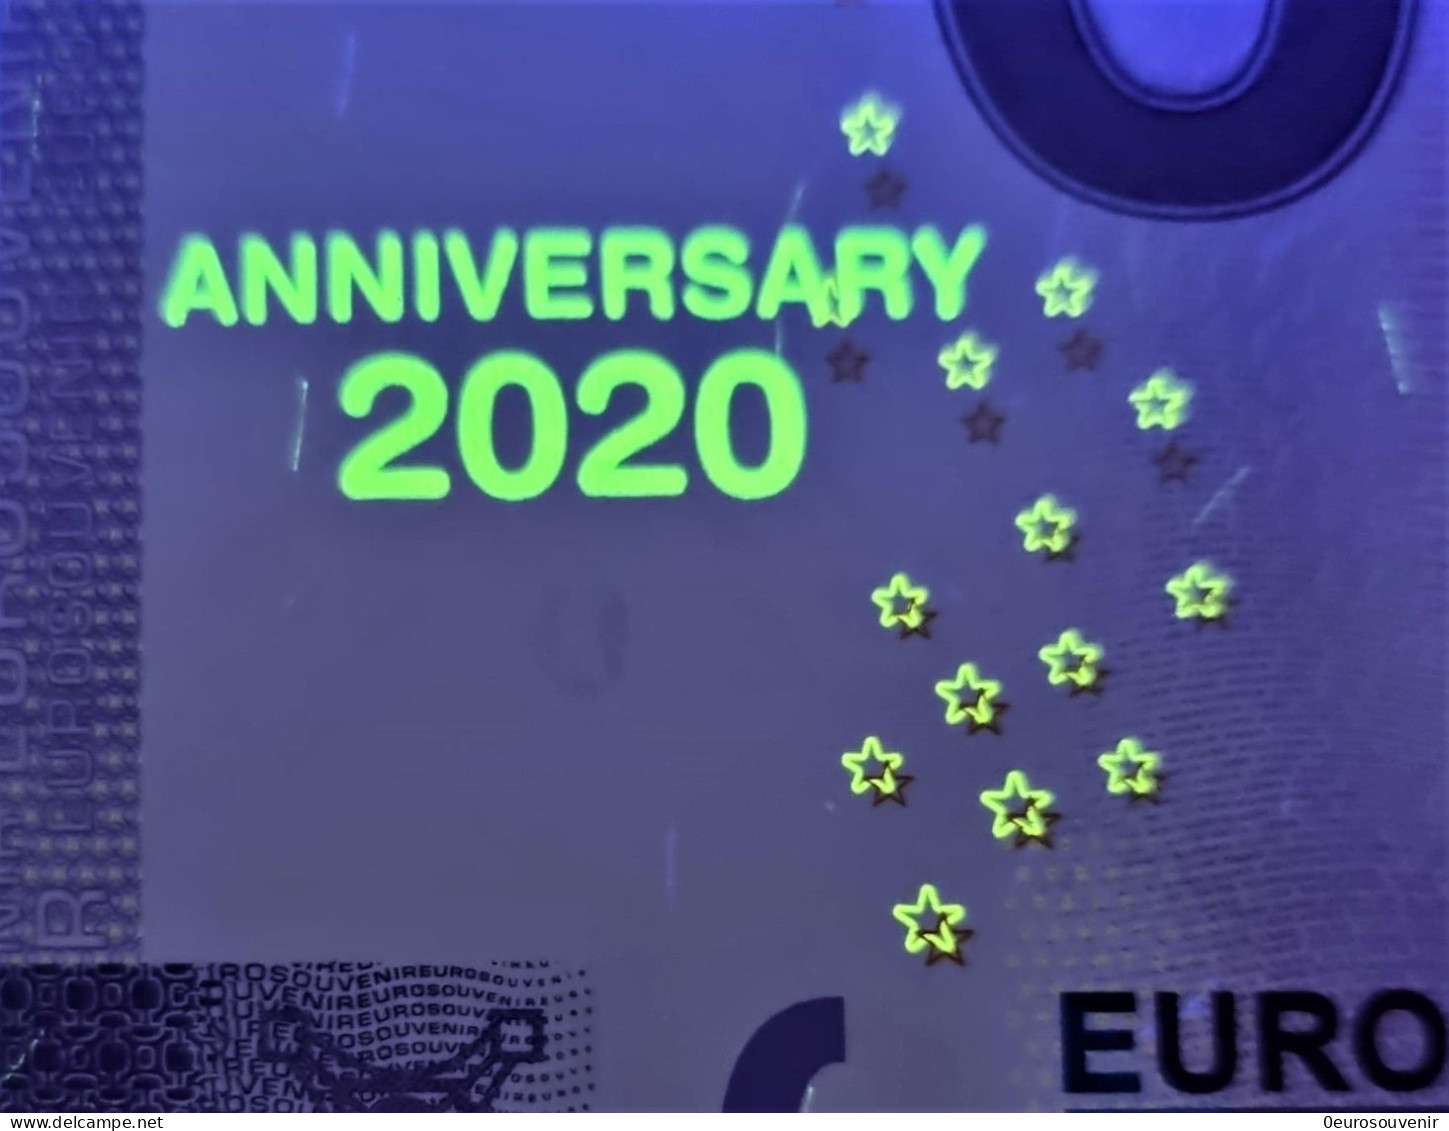 0-Euro XEHZ 2020-7 EUROPA PARK - PIRATEN IN BATAVIA SKULL  ANNIVERSARY - Private Proofs / Unofficial